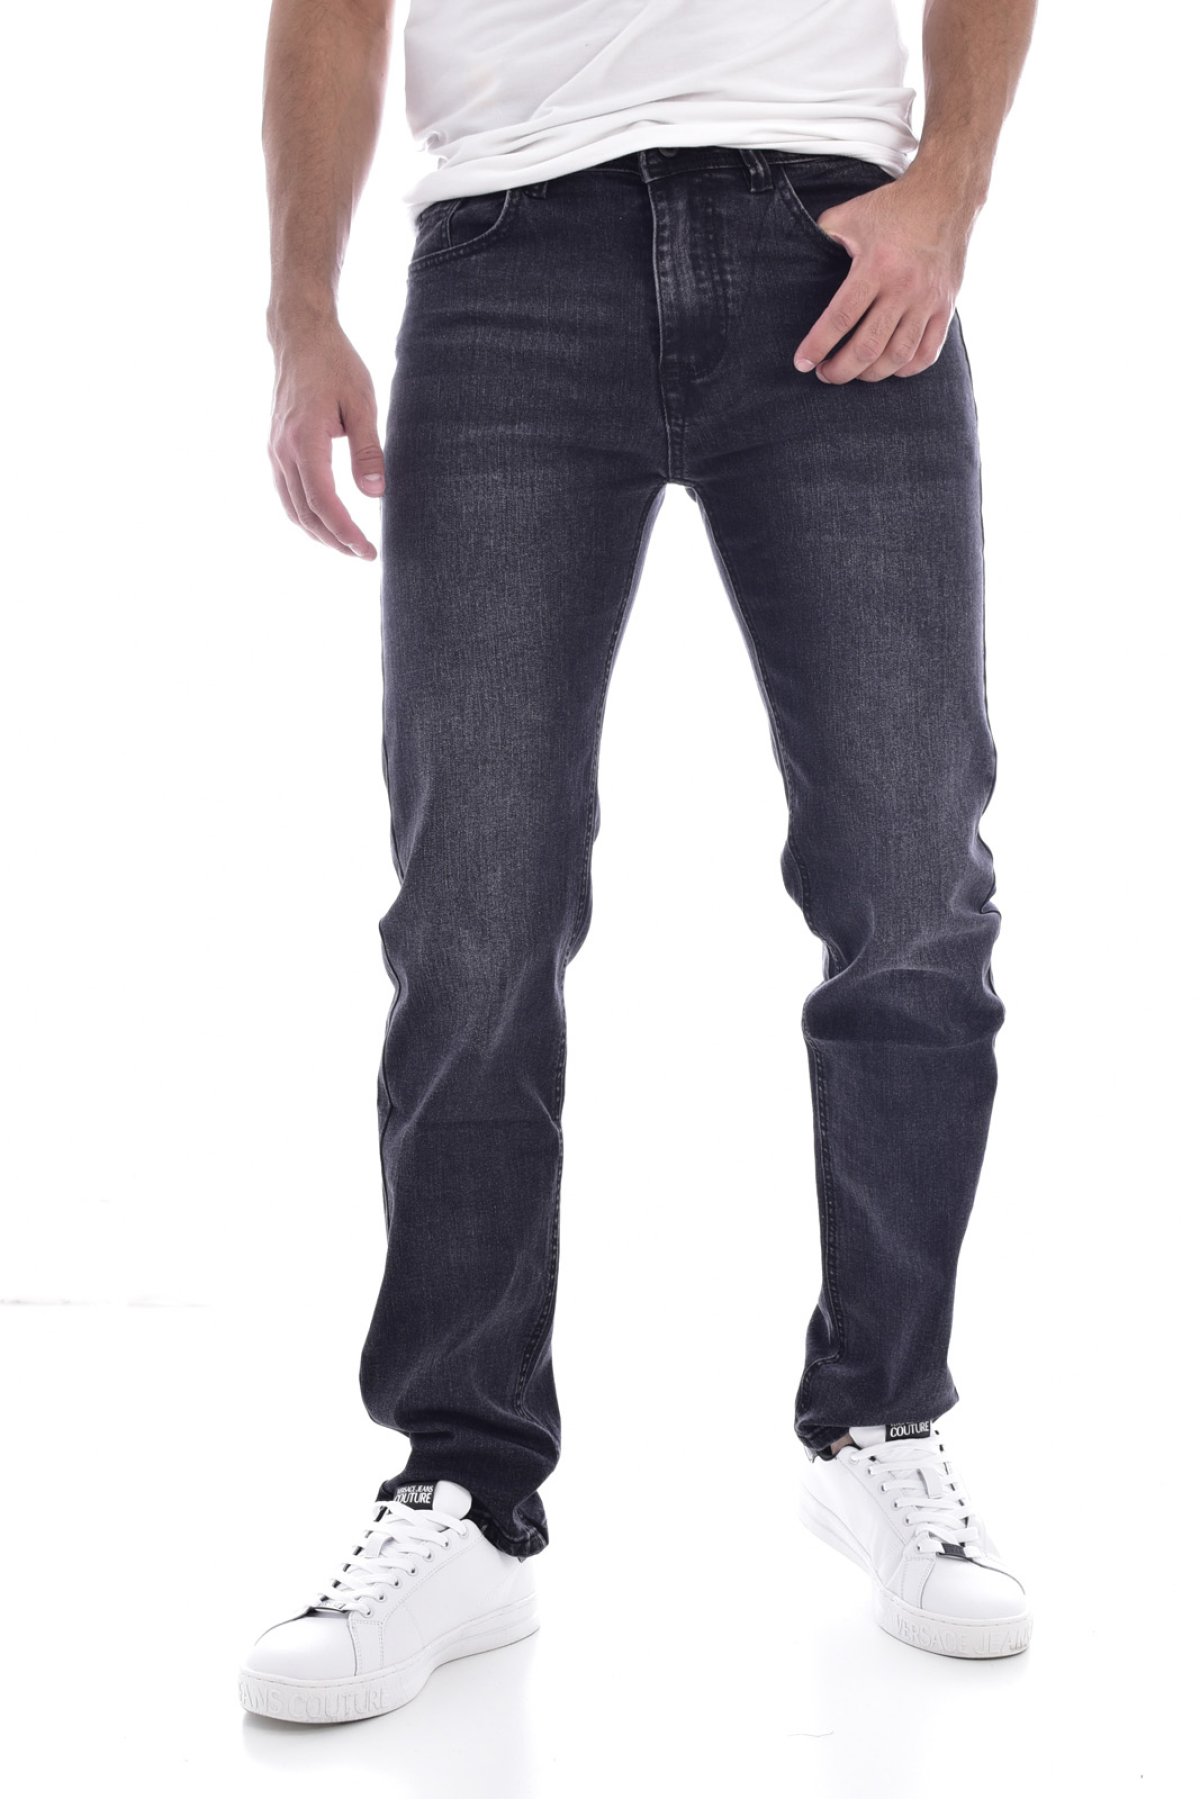 Giani 5 X2005 džíny černé